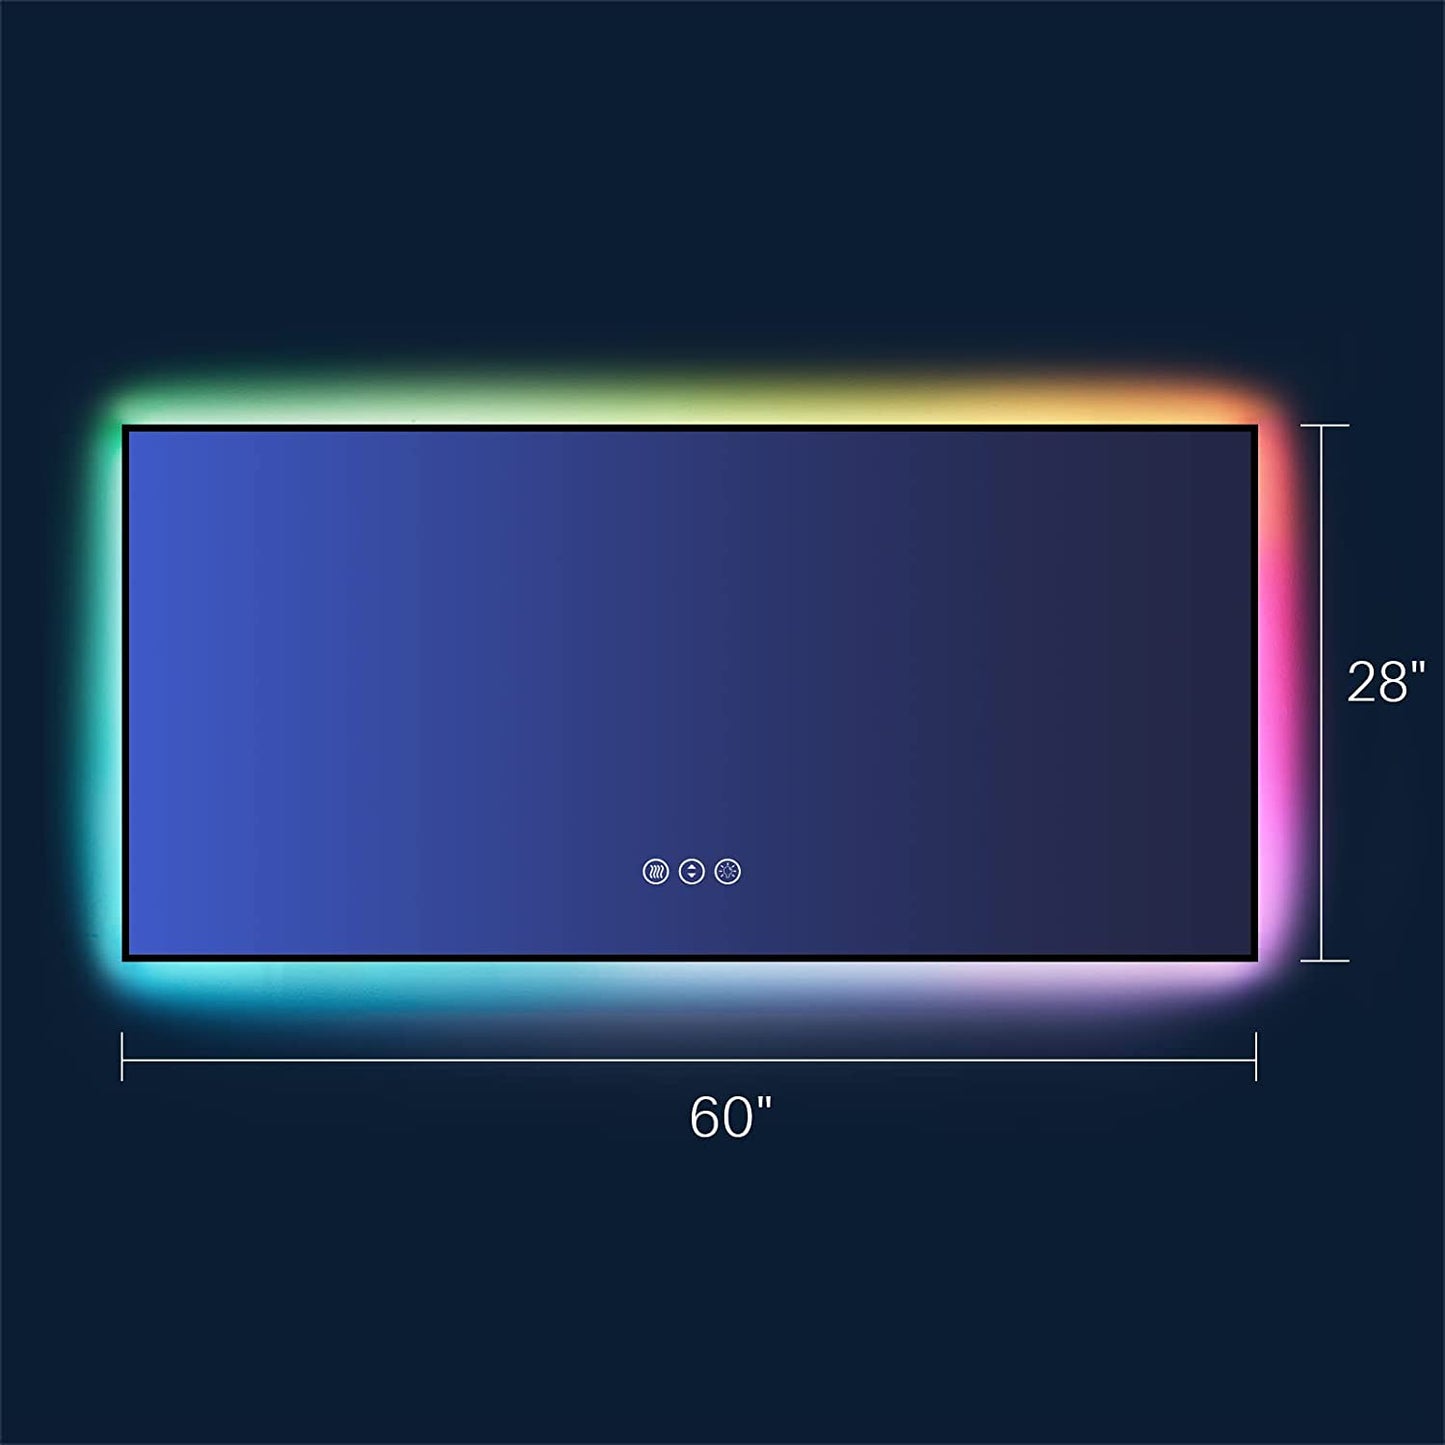 Amorho LED Bathroom Mirror with RGB Backlit, 60"x28"